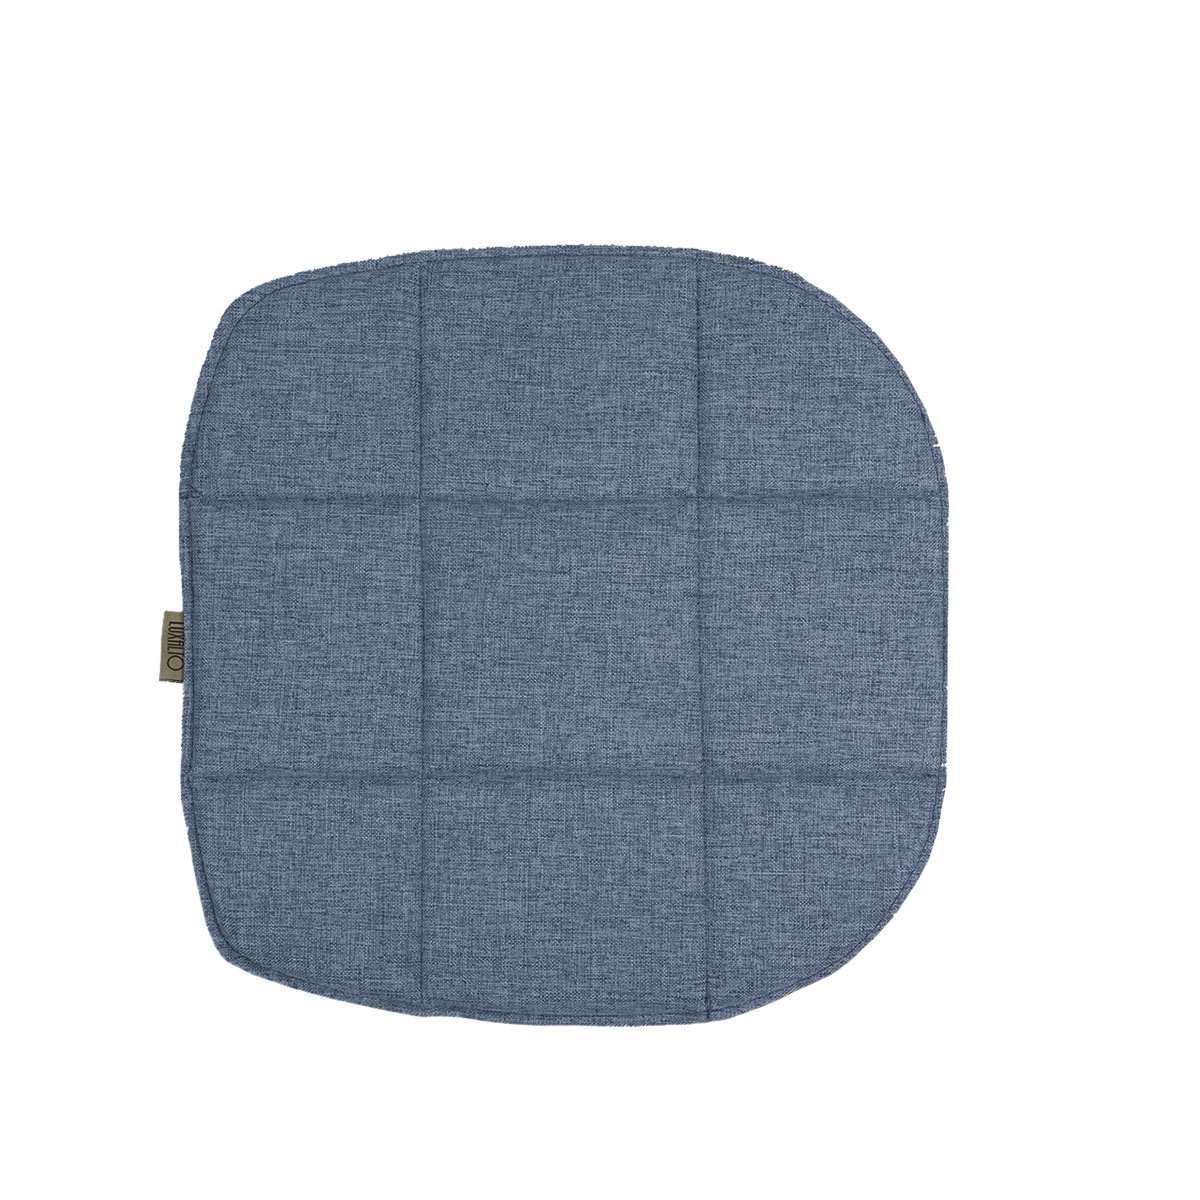 Подушка на стул LuxAlto для модели Eames/Aspen, рогожка джинсовый (Laguna 795), 2 шт.